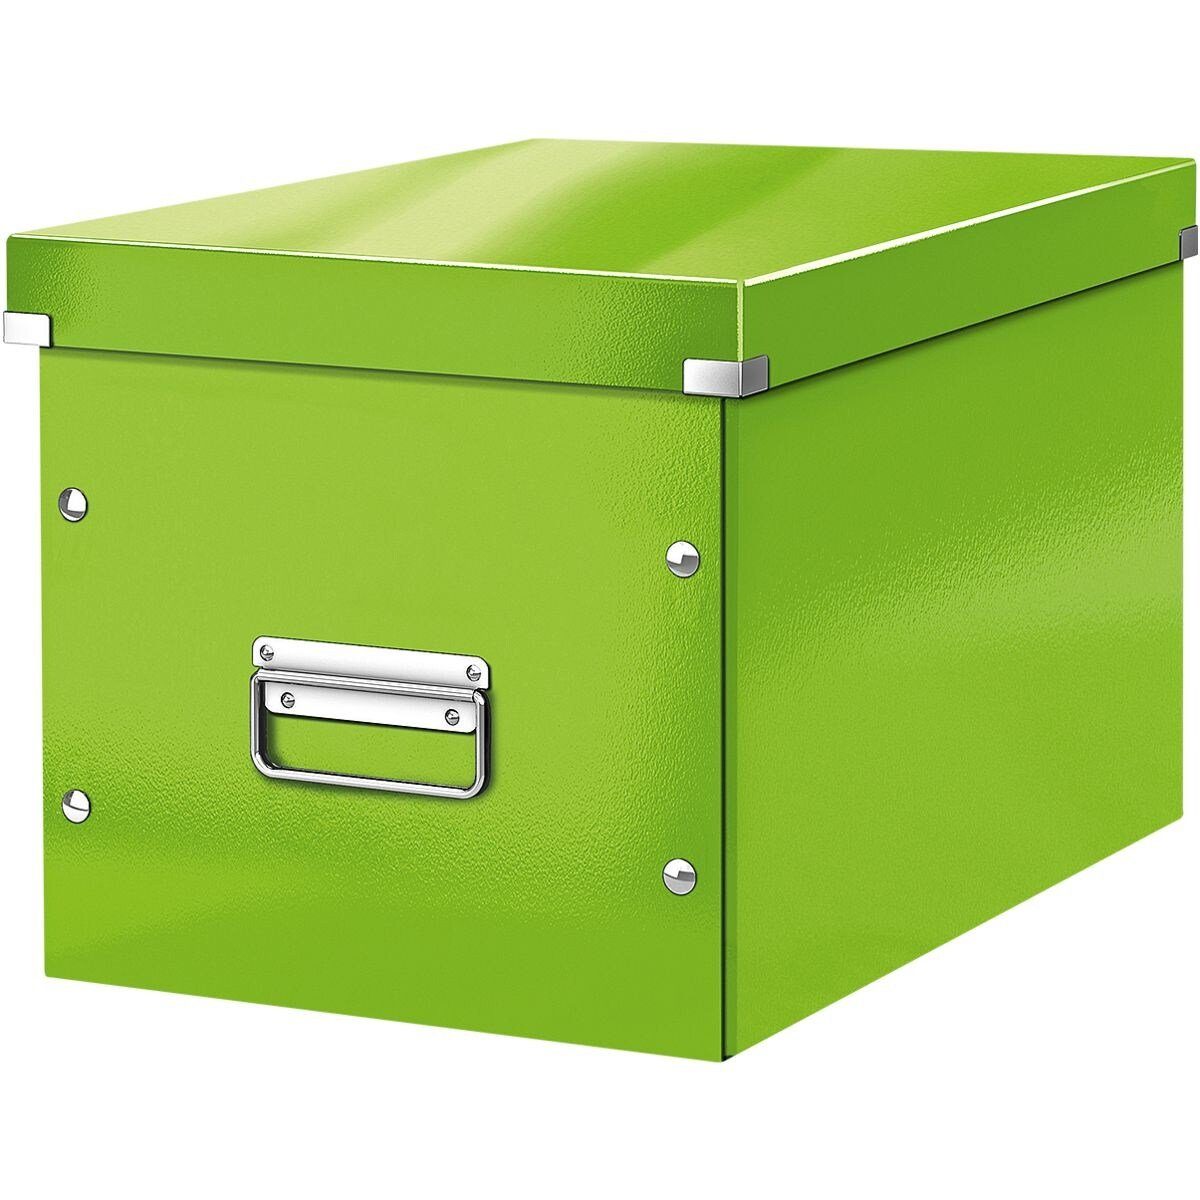 LEITZ Aufbewahrungsbox Click & Store Cube, passend für Standardmöbel mit kubischen Fächern grün metallic